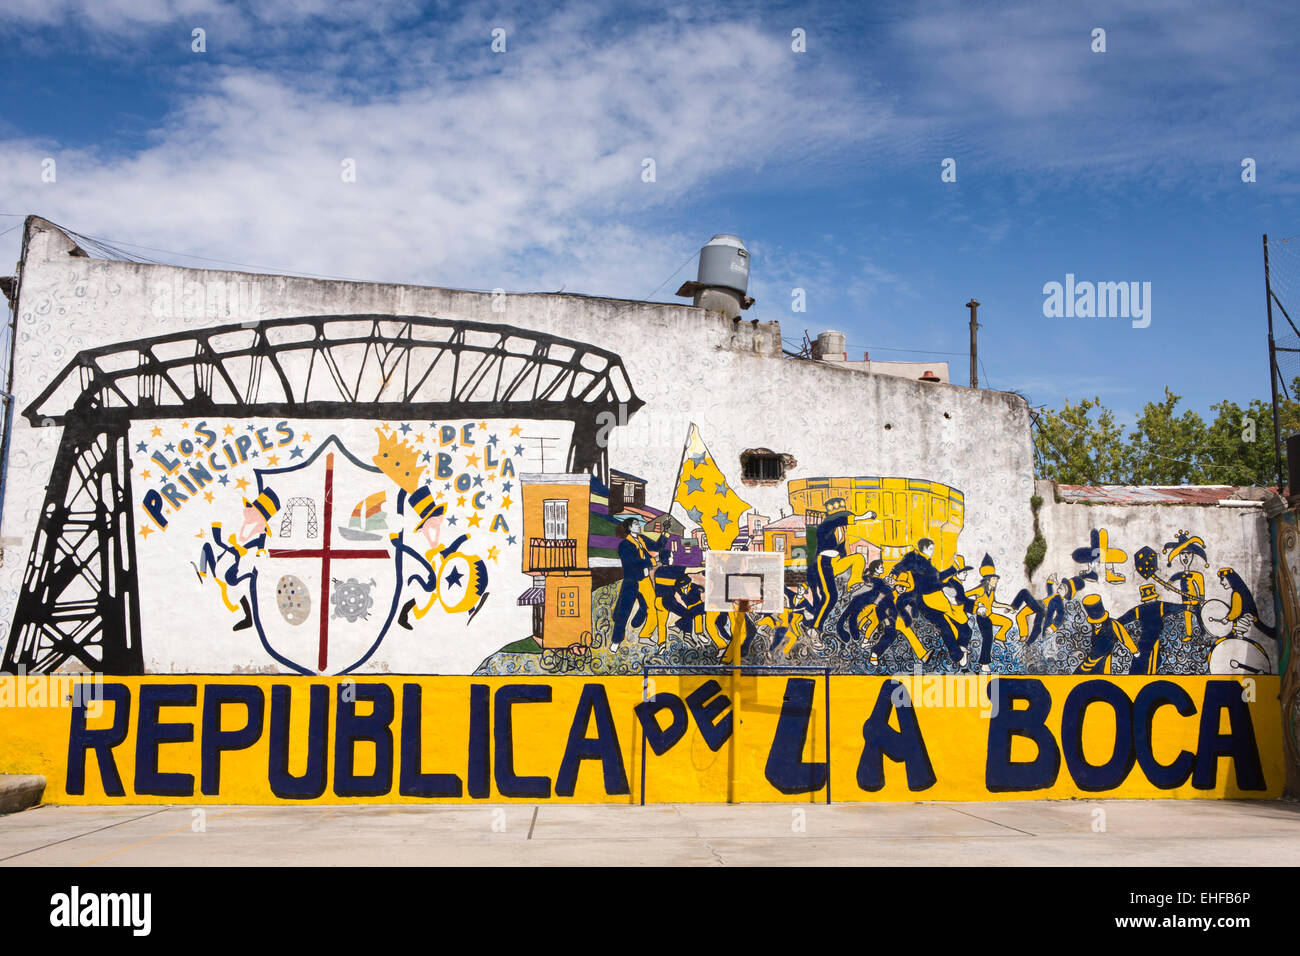 Argentina, Buenos Aires, La Boca, Republica de la Boca, decorazione murale di pallacanestro Foto Stock